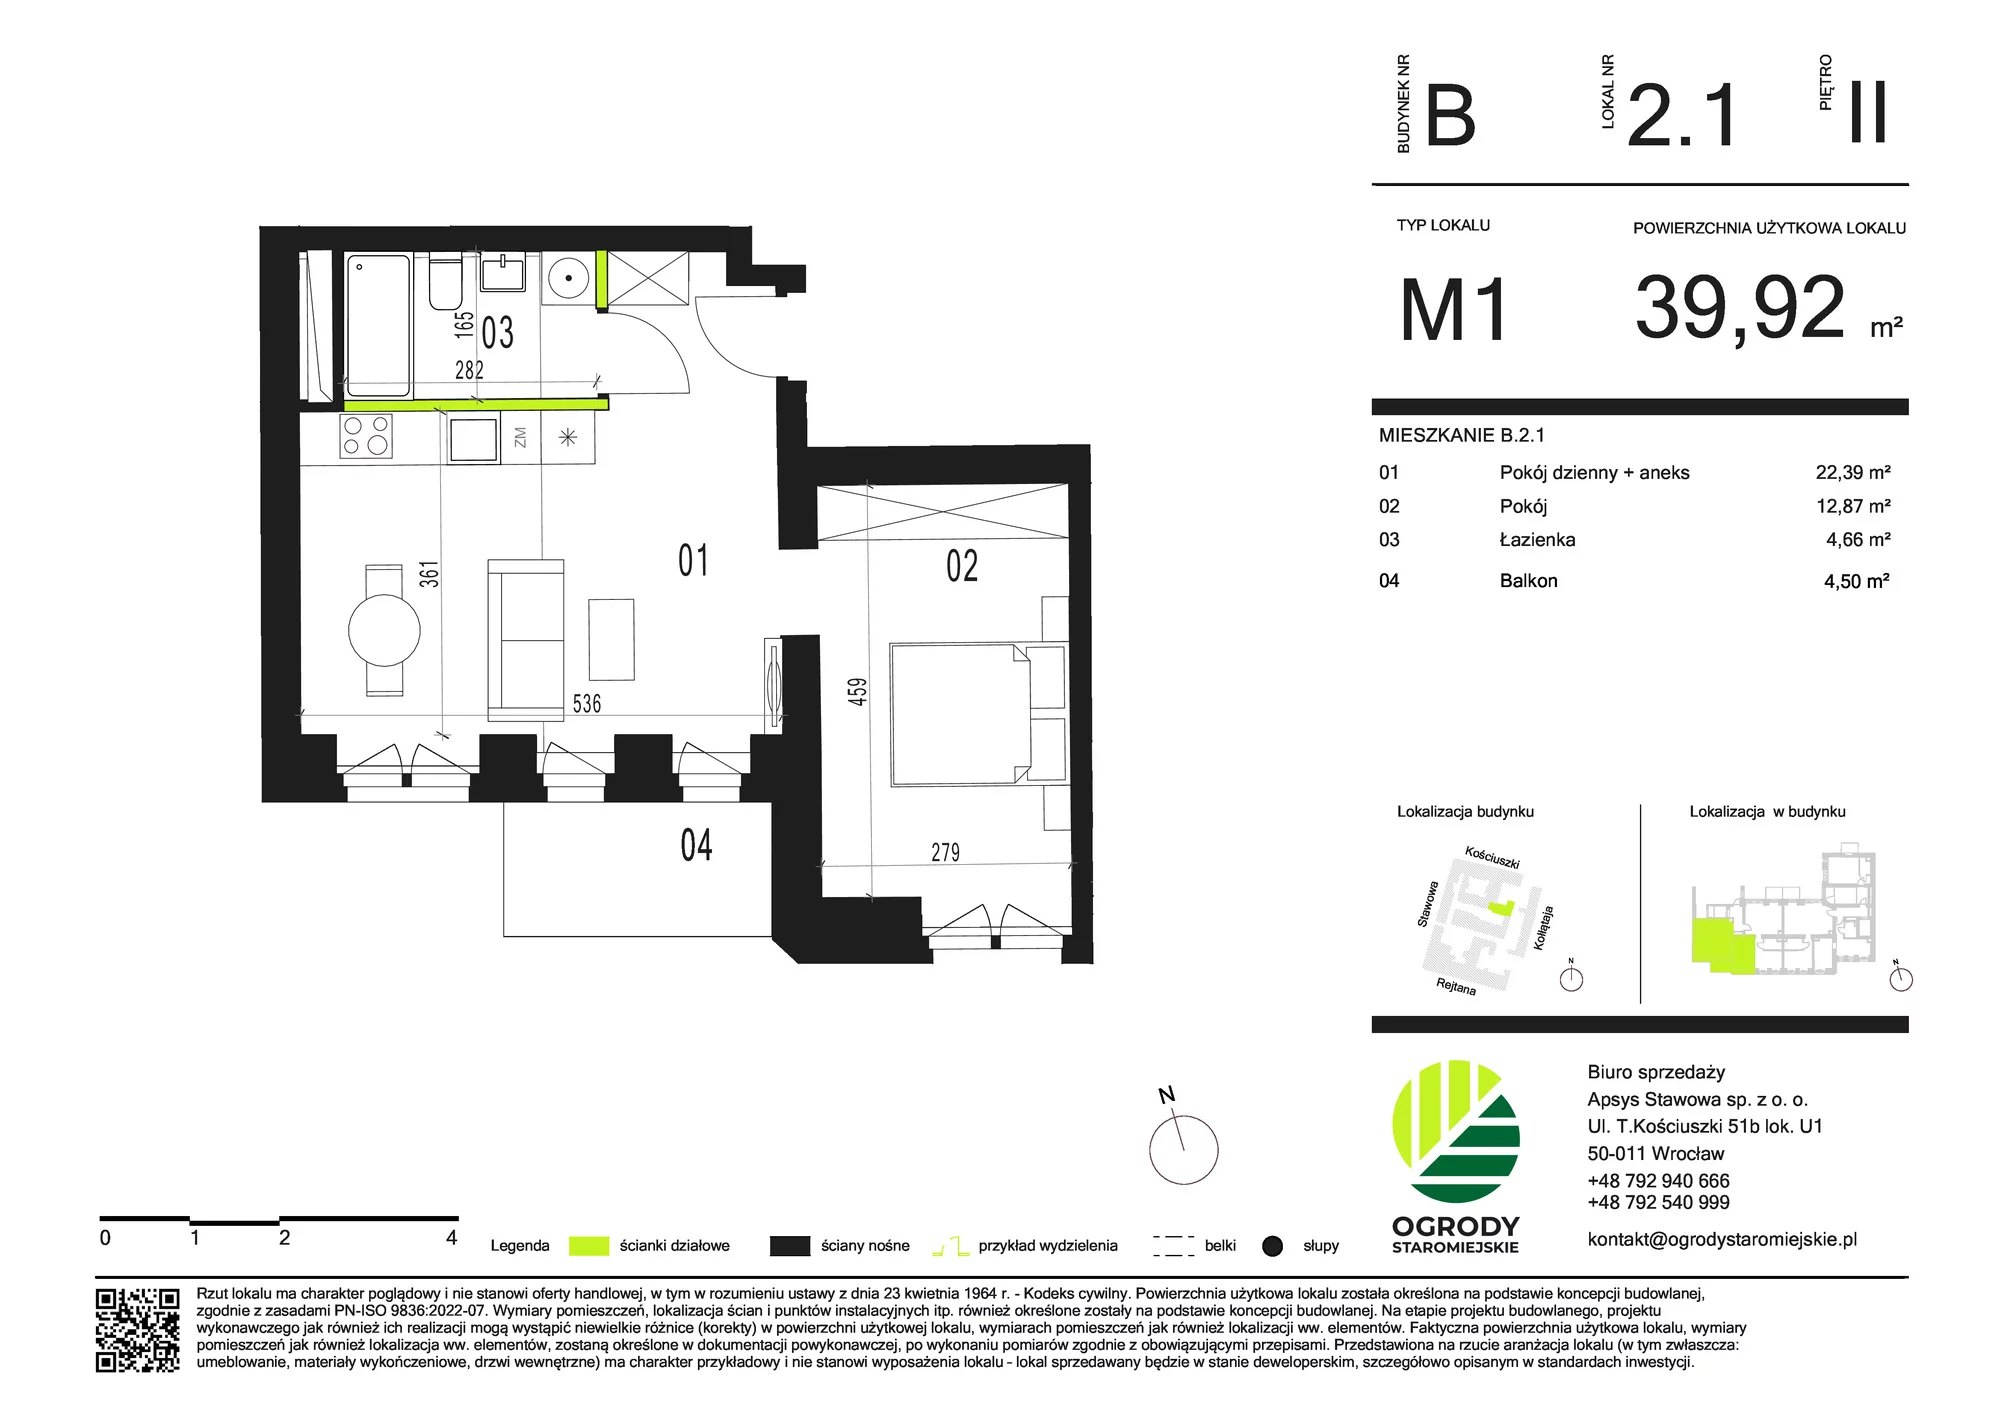 Mieszkanie 39,92 m², piętro 2, oferta nr B.2.1, Ogrody Staromiejskie, Wrocław, Przedmieście Świdnickie, ul. Stawowa 10